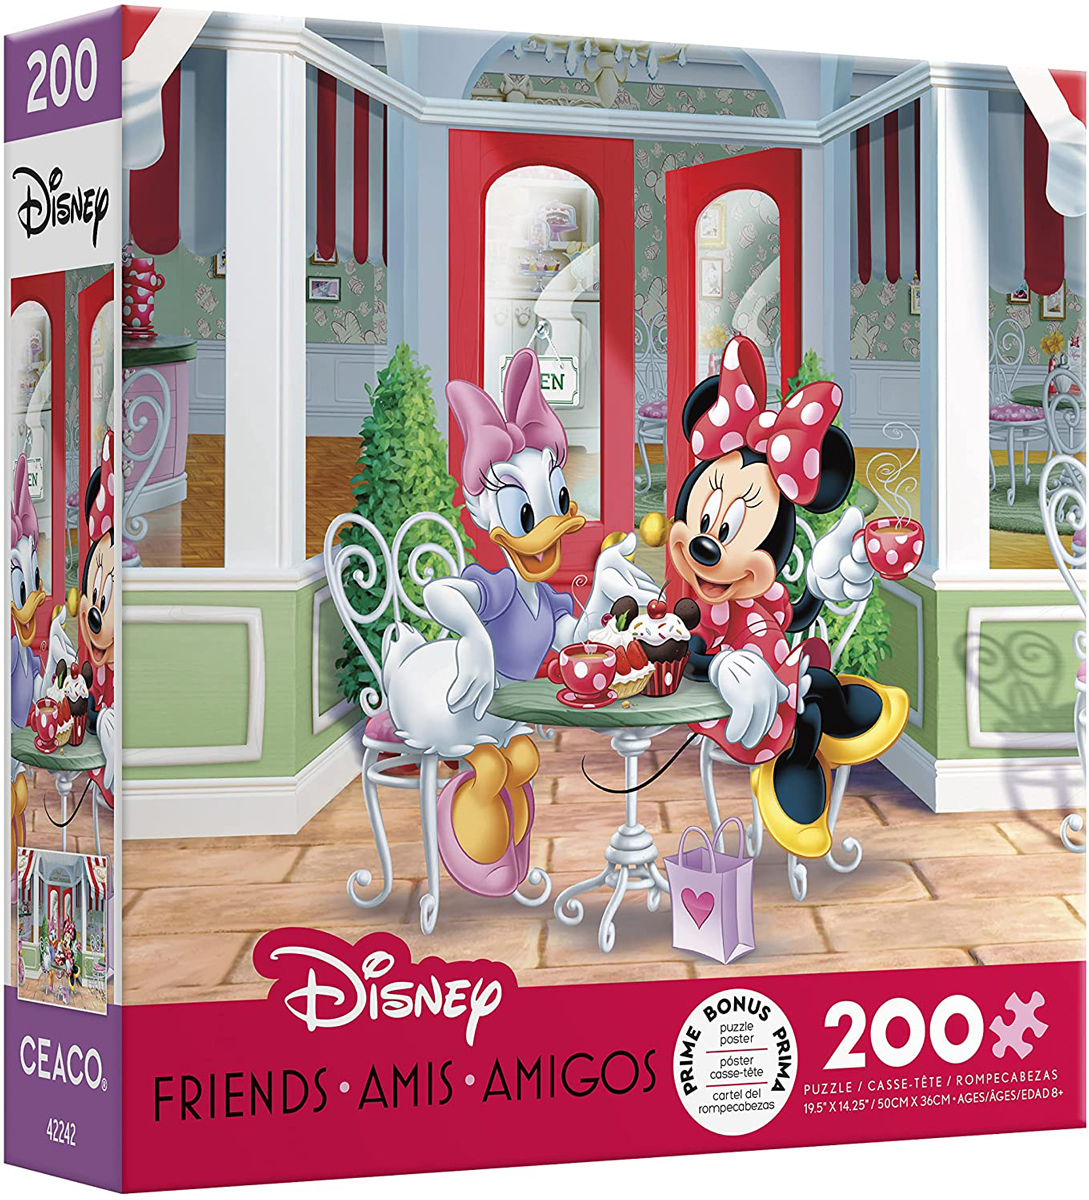 Minnie and Daisy Café